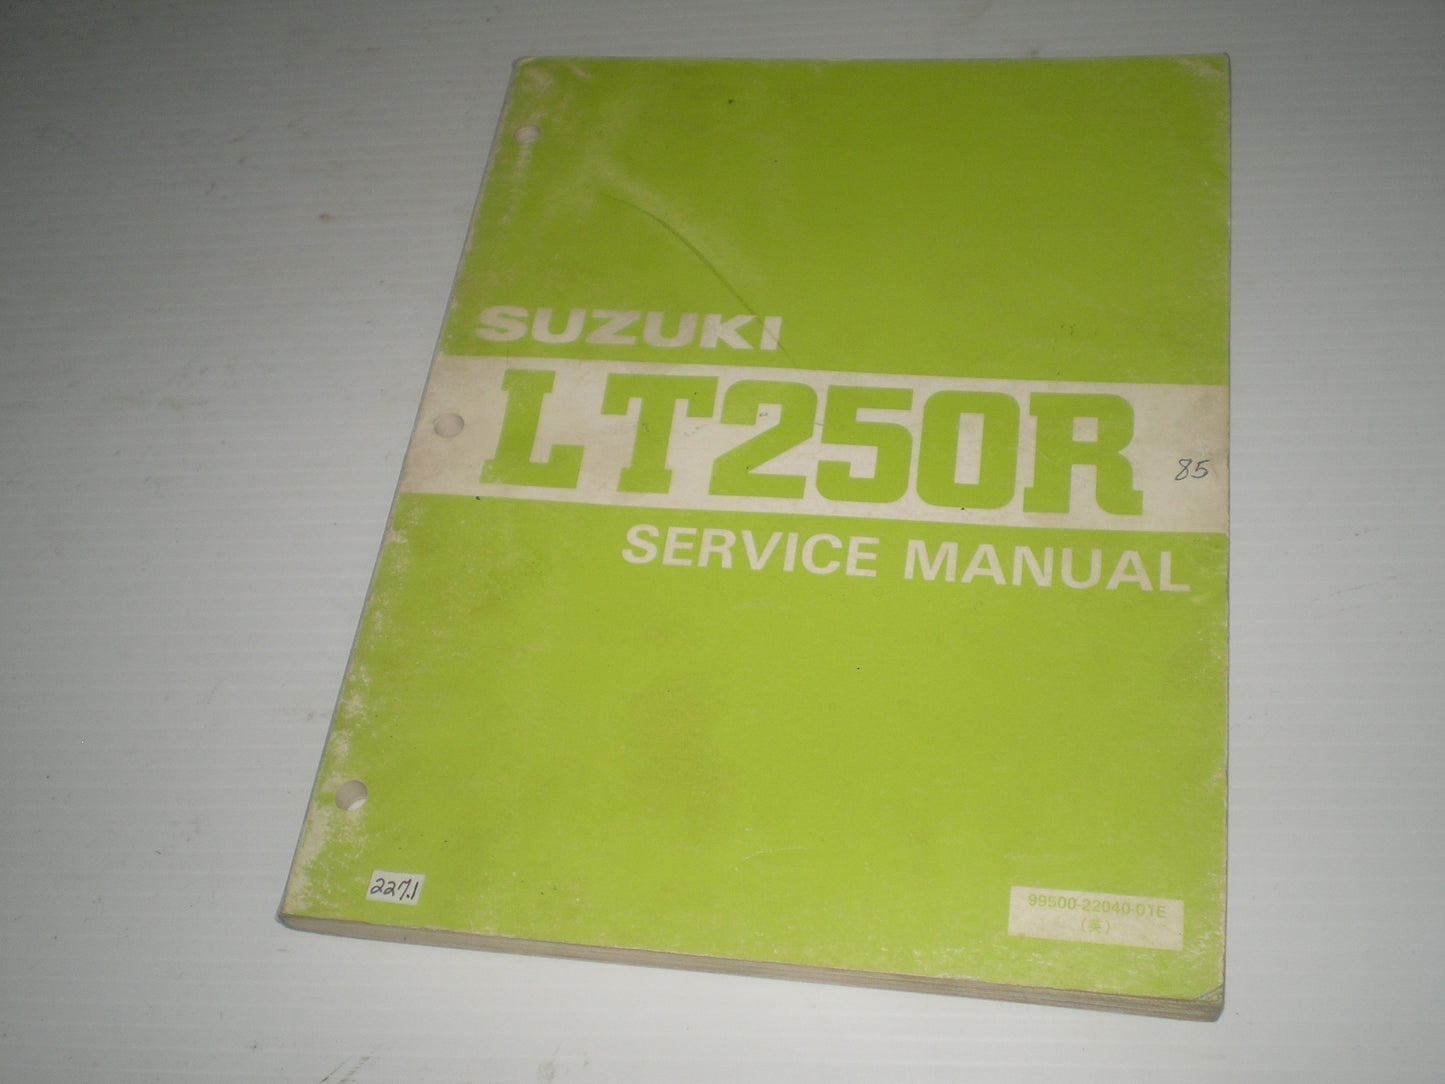 SUZUKI LT250R  LT250 R 1985  Service Manual  99500-22040-01E  #227.1